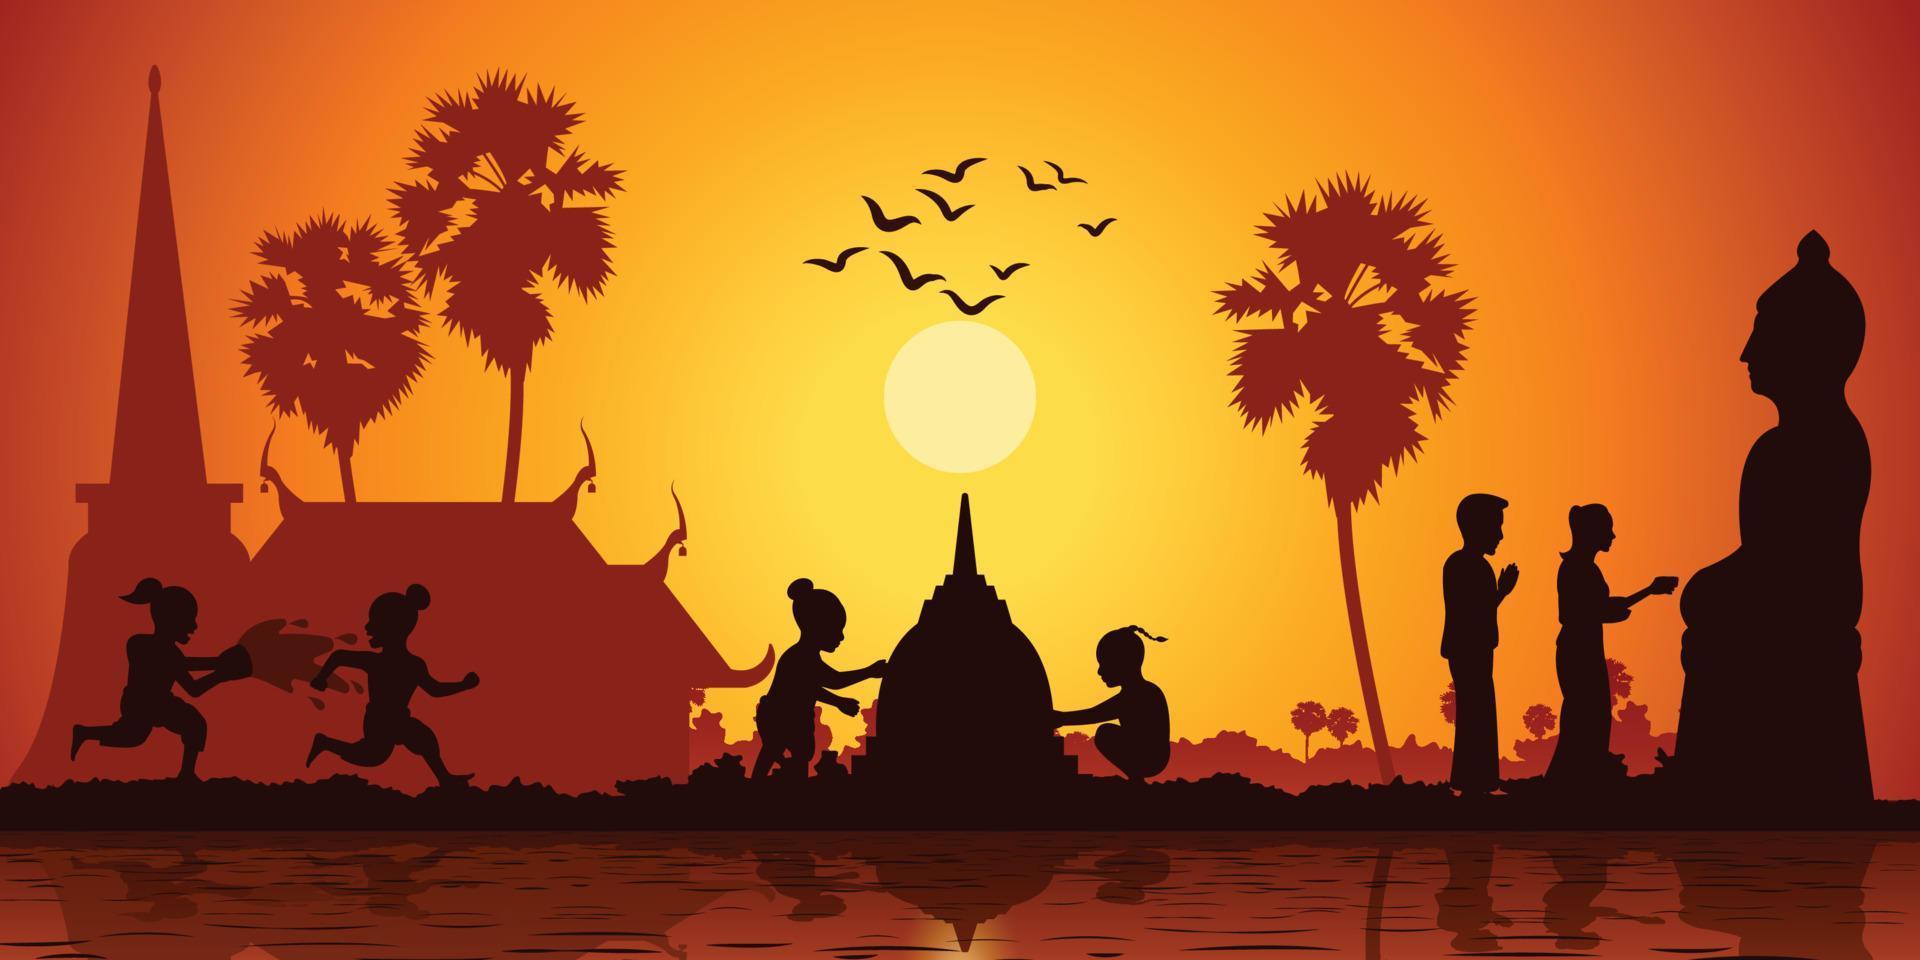 la vita di campagna dell'Asia i bambini giocano con l'acqua e costruiscono la pagoda di sabbia mentre la coppia versa l'acqua alla scultura del buddha all'ora dell'alba,stile silhouette vettore